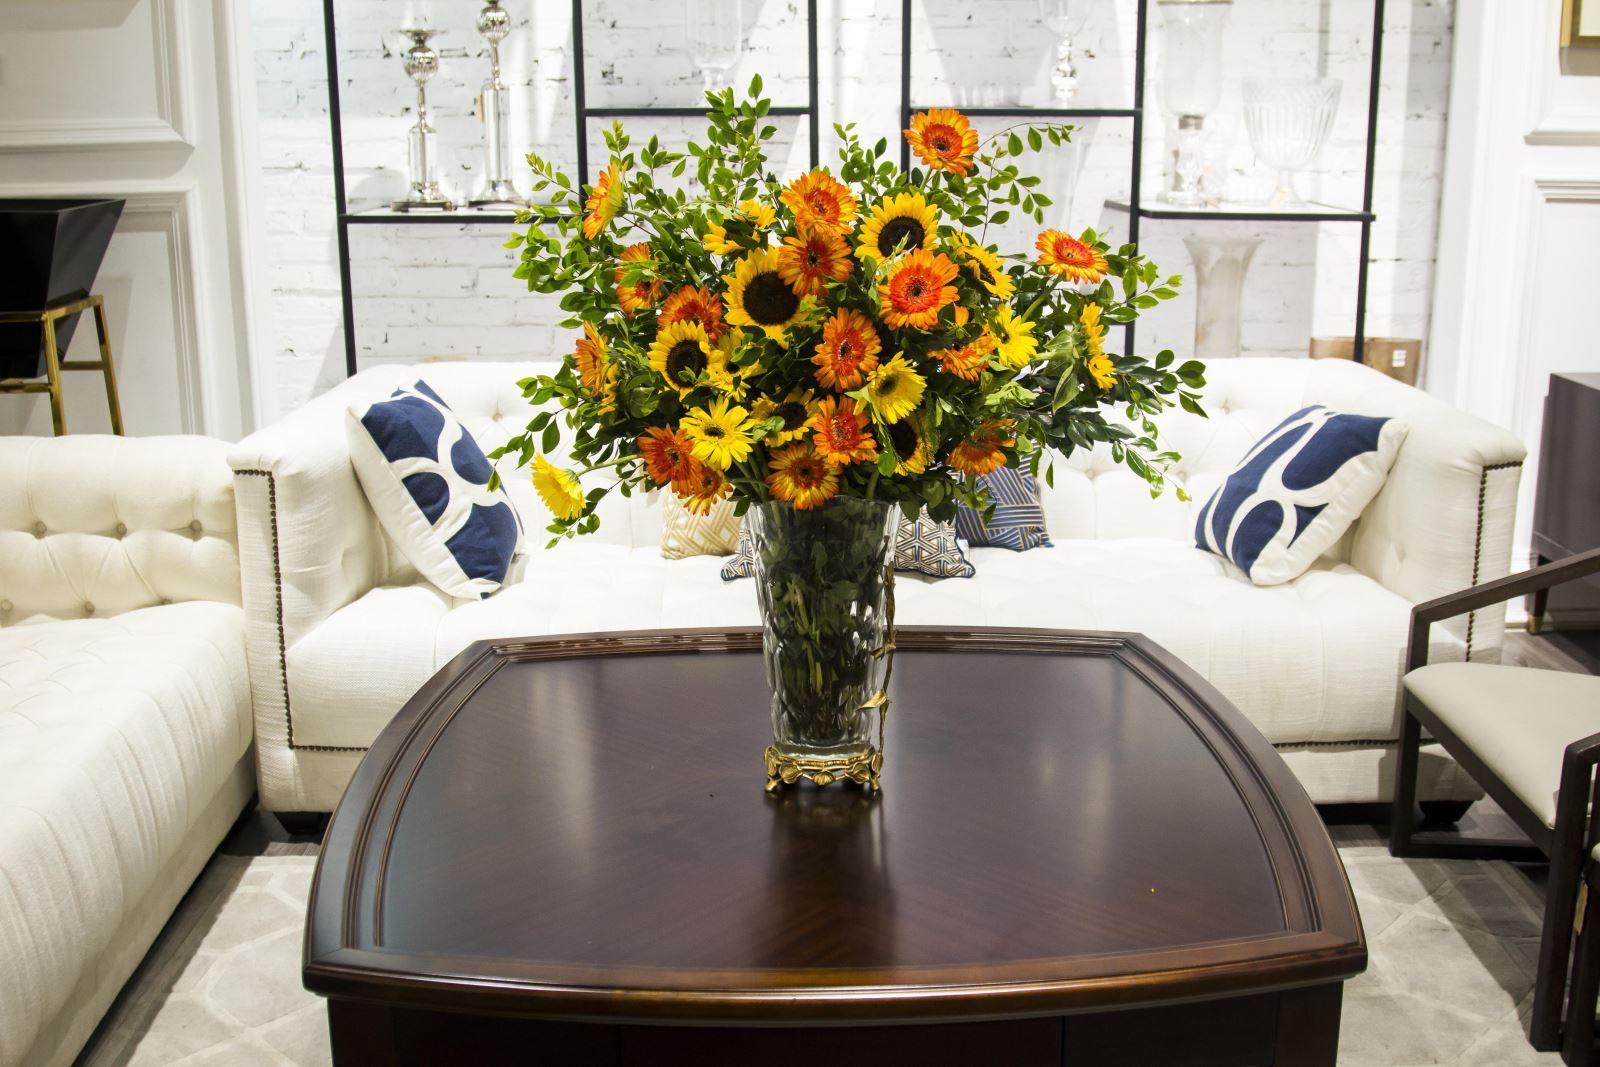 Hoa trang trí phòng khách đẹp từ hoa hướng dương, đồng tiền